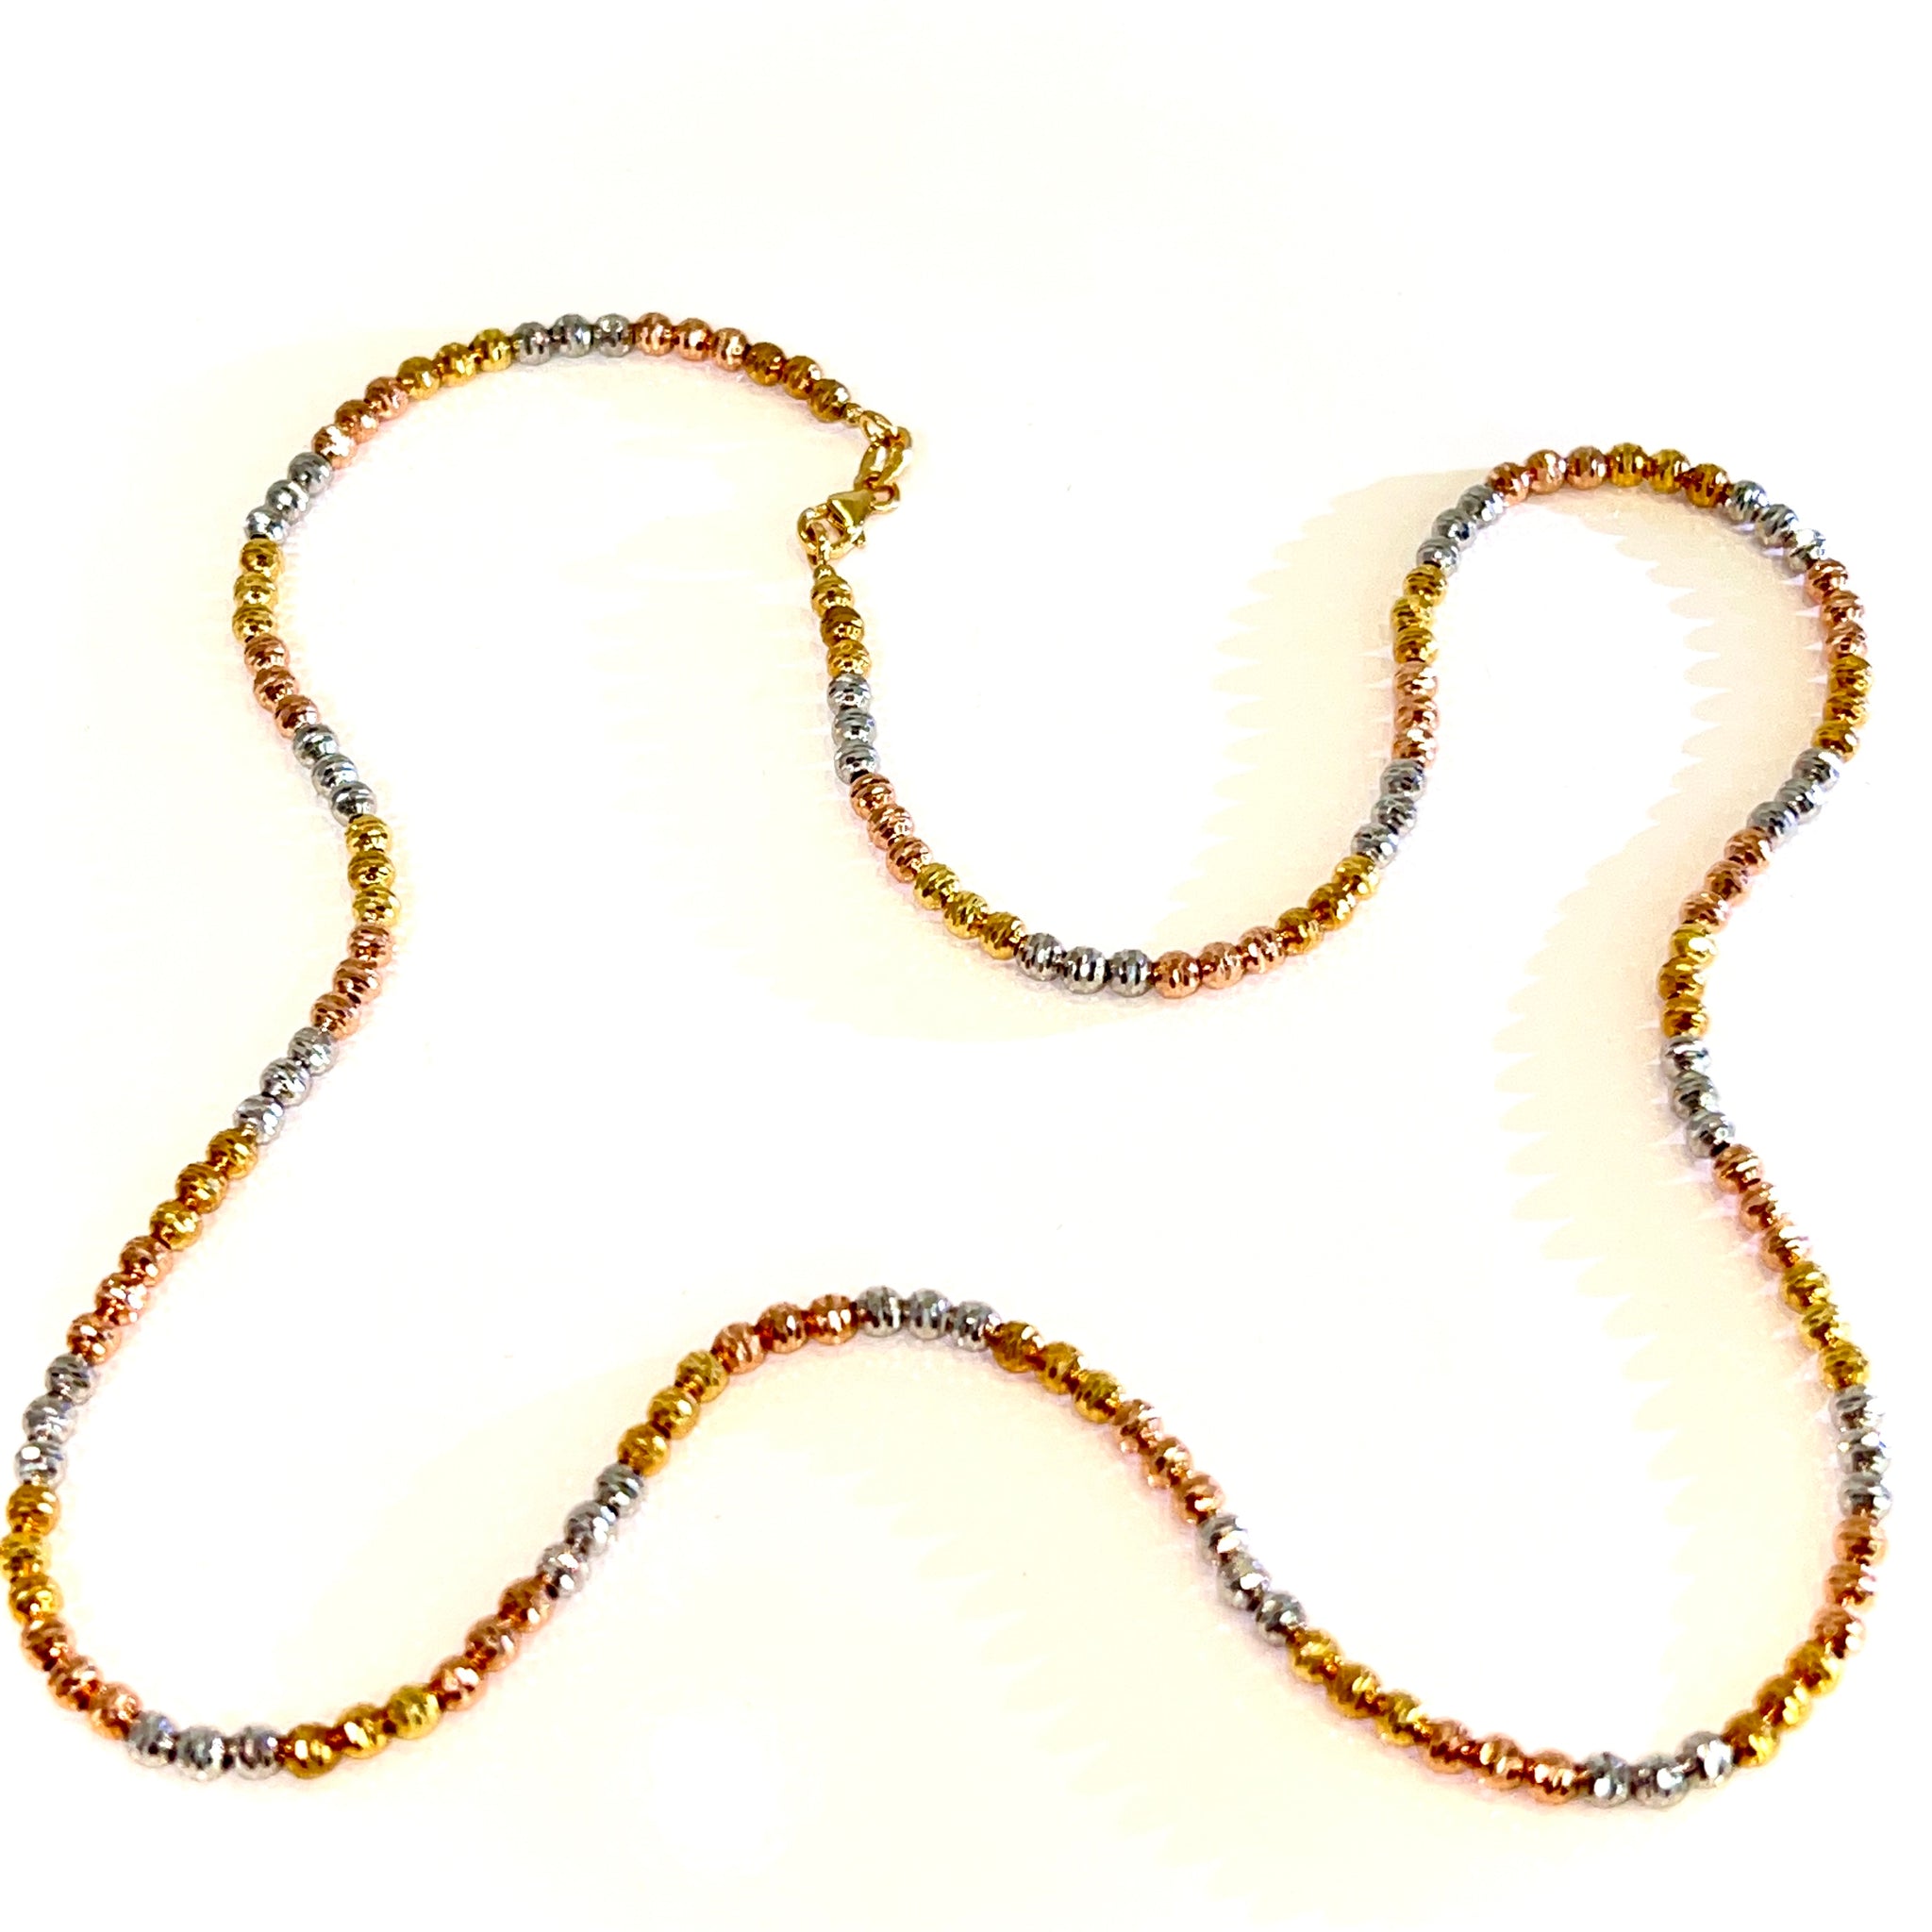 Tricolor Mooncut Chain - 14 carat gold - 50cm / 3.3mm